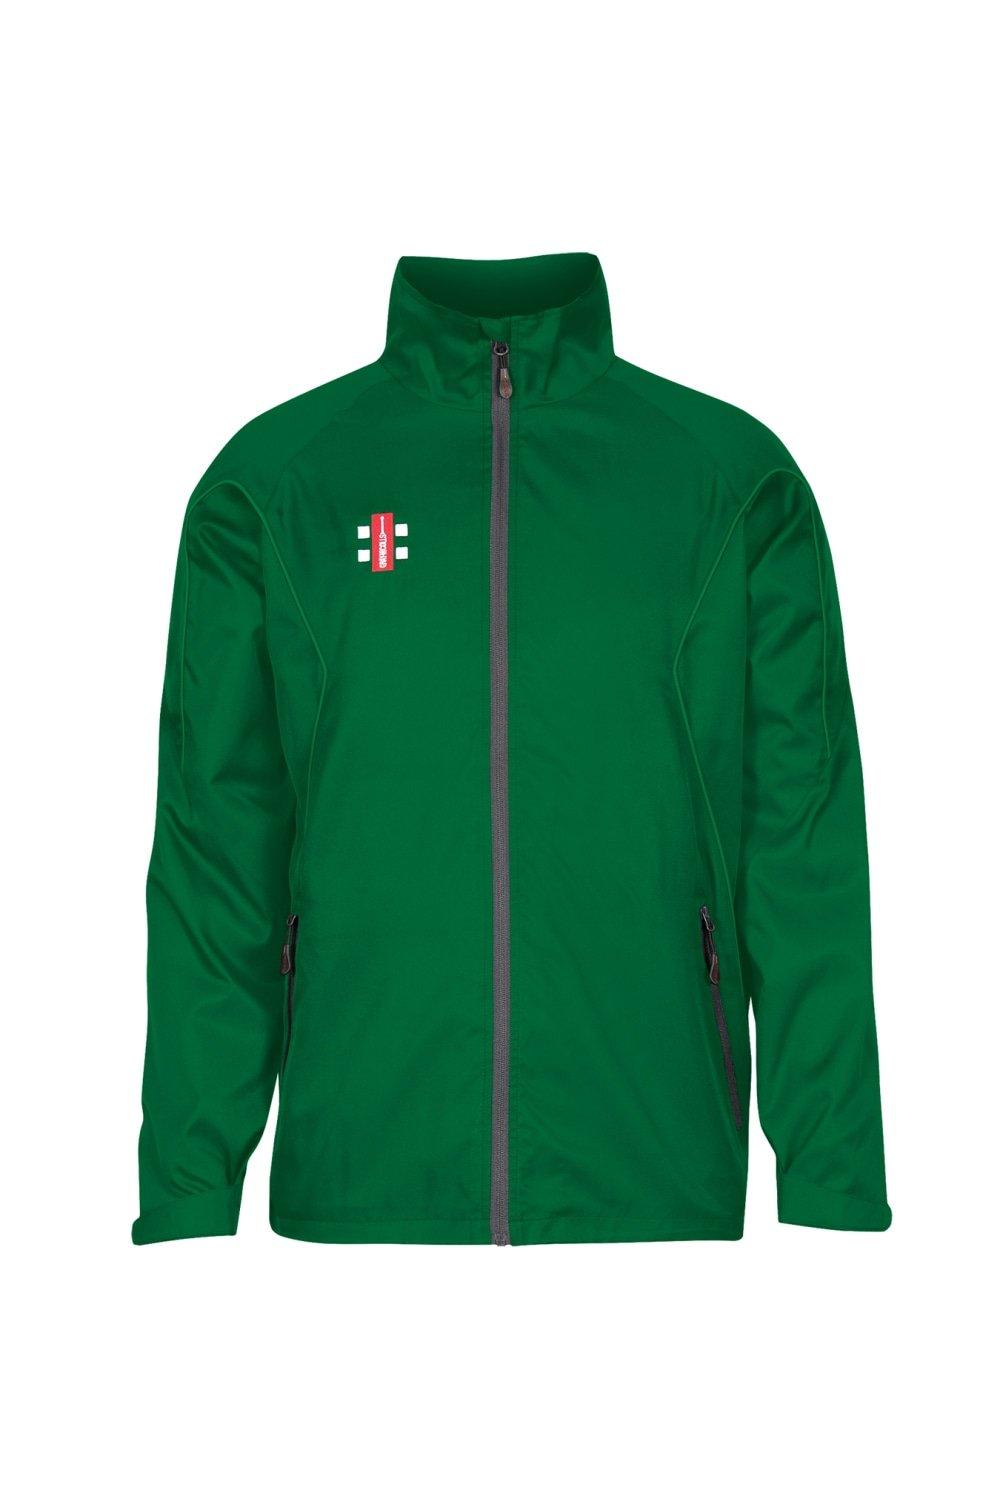 Тренировочная куртка Storm Gray-Nicolls, зеленый топ сиреневый трикотажный 44 46 размер